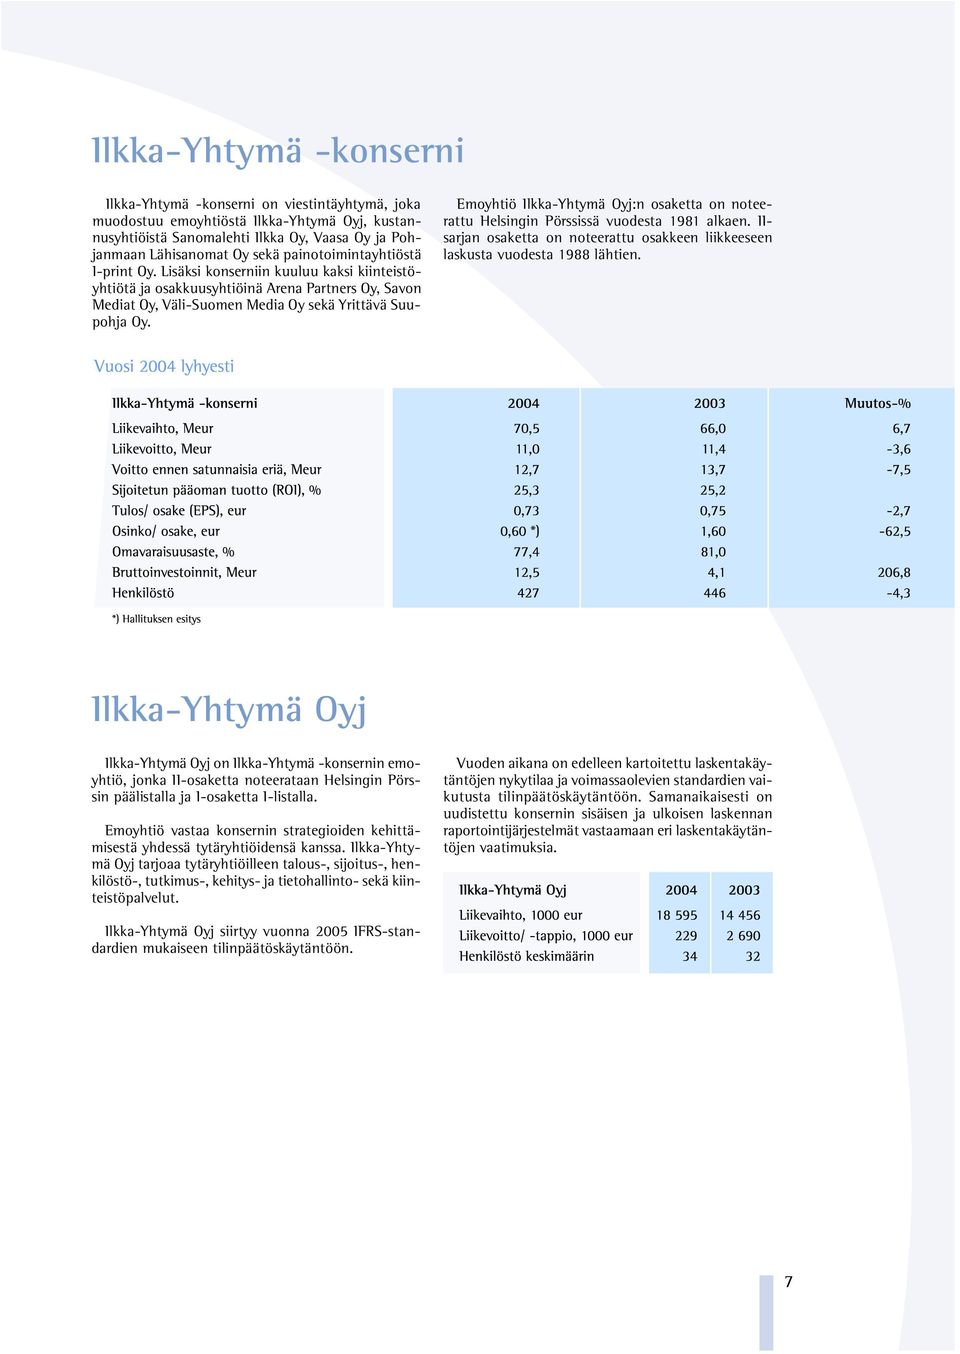 Emoyhtiö Ilkka-Yhtymä Oyj:n osaketta on noteerattu Helsingin Pörssissä vuodesta 1981 alkaen. IIsarjan osaketta on noteerattu osakkeen liikkeeseen laskusta vuodesta 1988 lähtien.